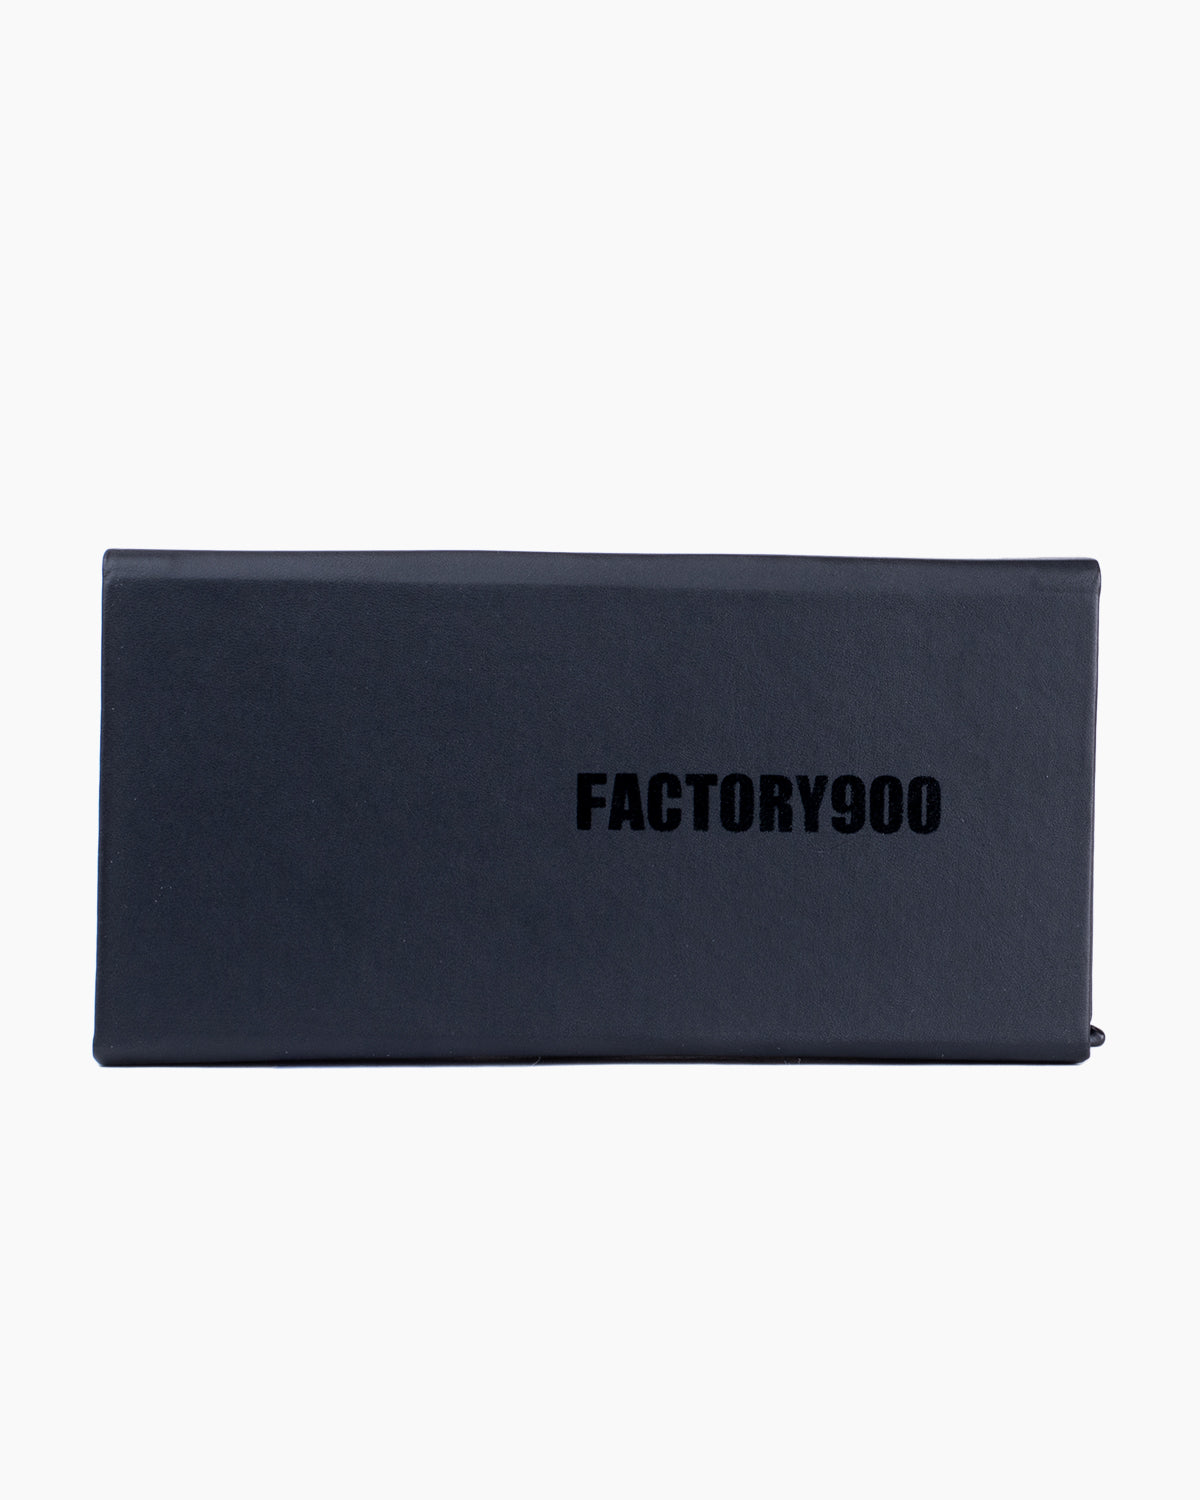 Factory 900 - MF002 - 01 | Bar à lunettes